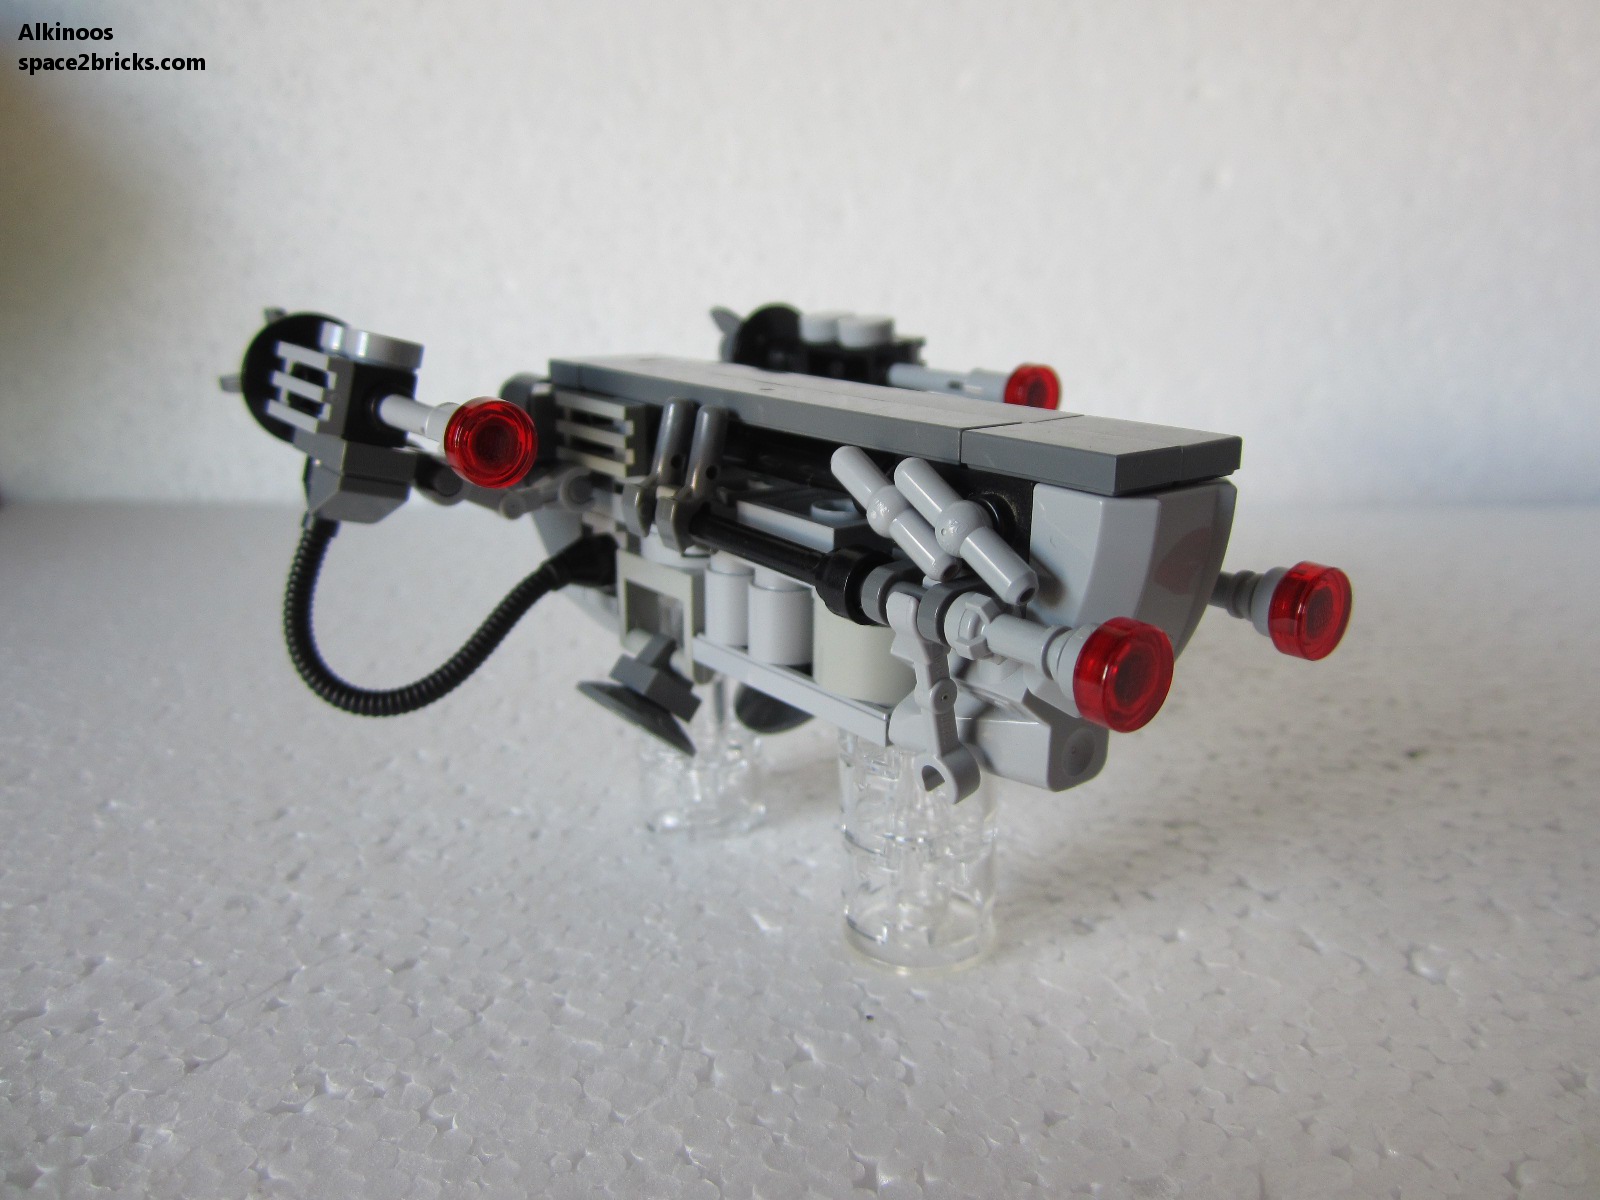 Lego Star Wars 75003 : A-Wing - Lego(R) by Alkinoos